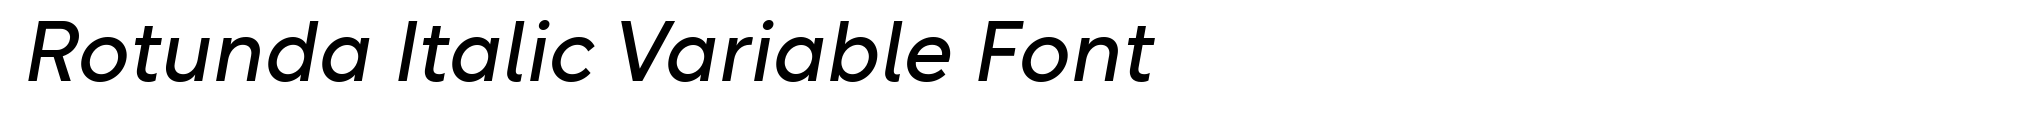 Rotunda Italic Variable Font image